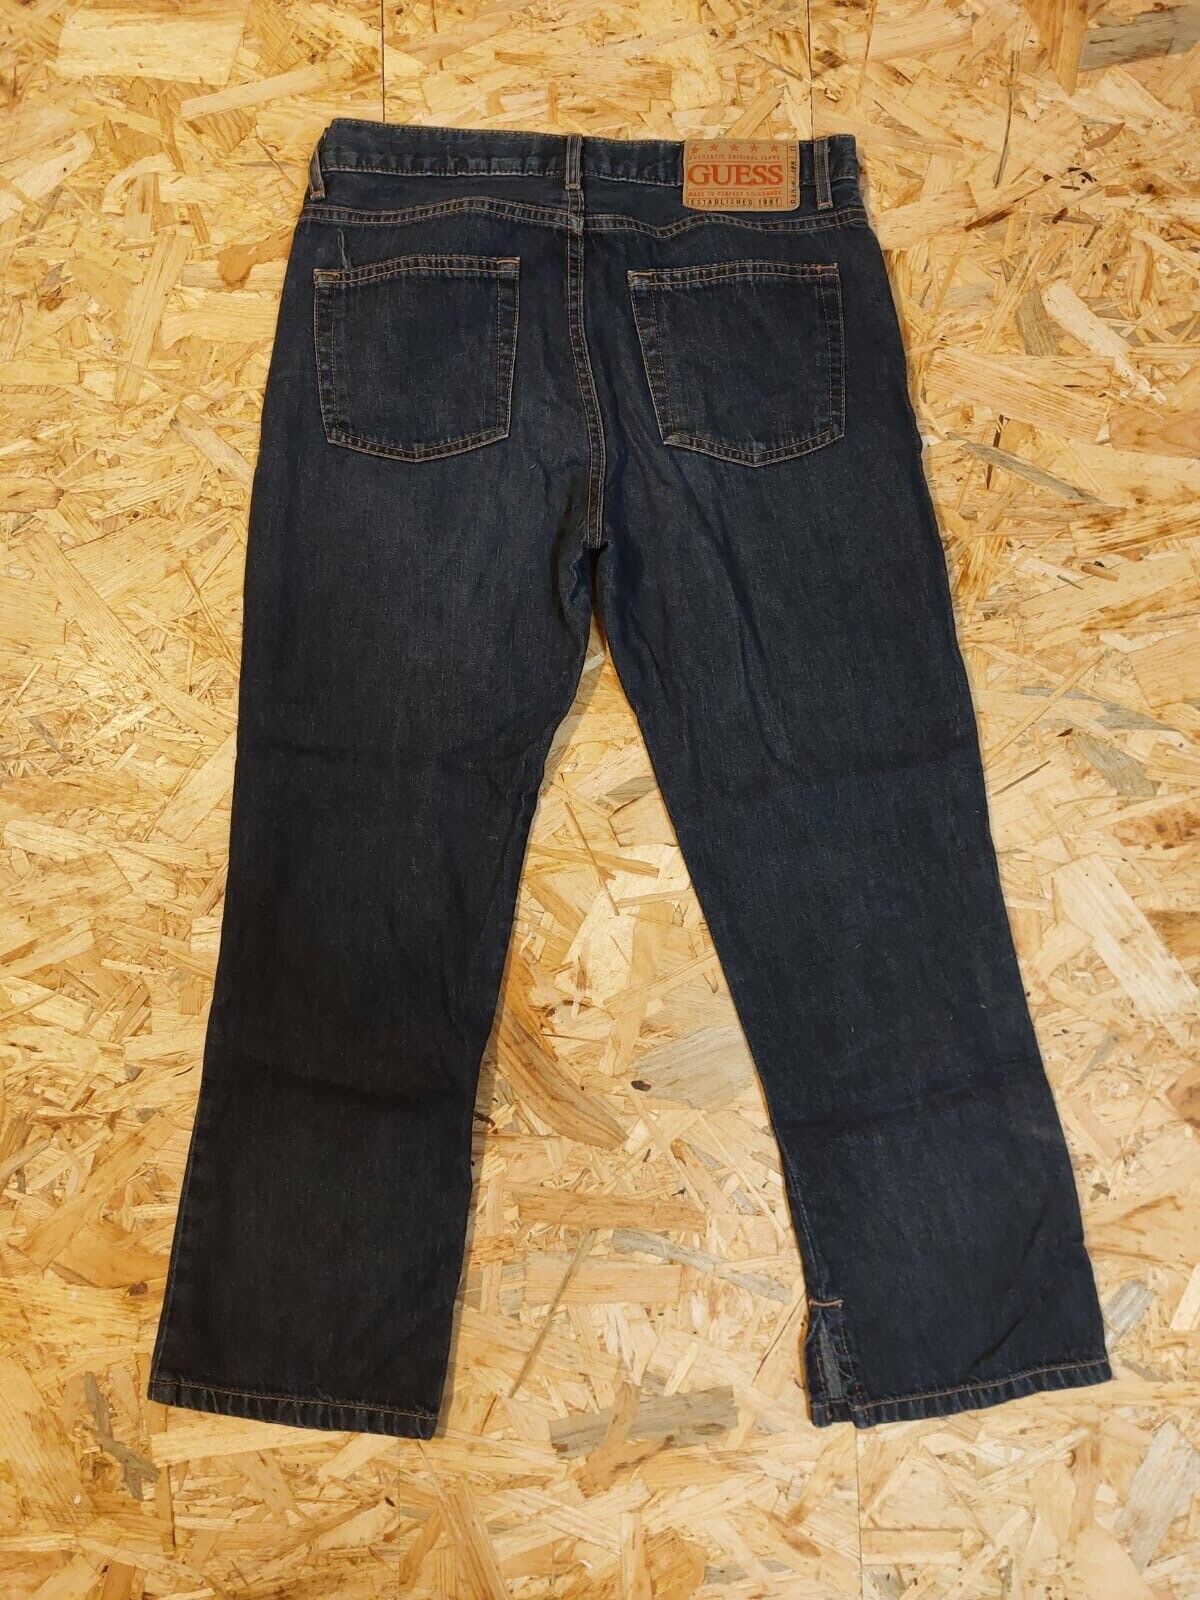 GUESS Jeans Capris W29 L25 Dark Blue 100% Cotton Style 13091 Cut 53597